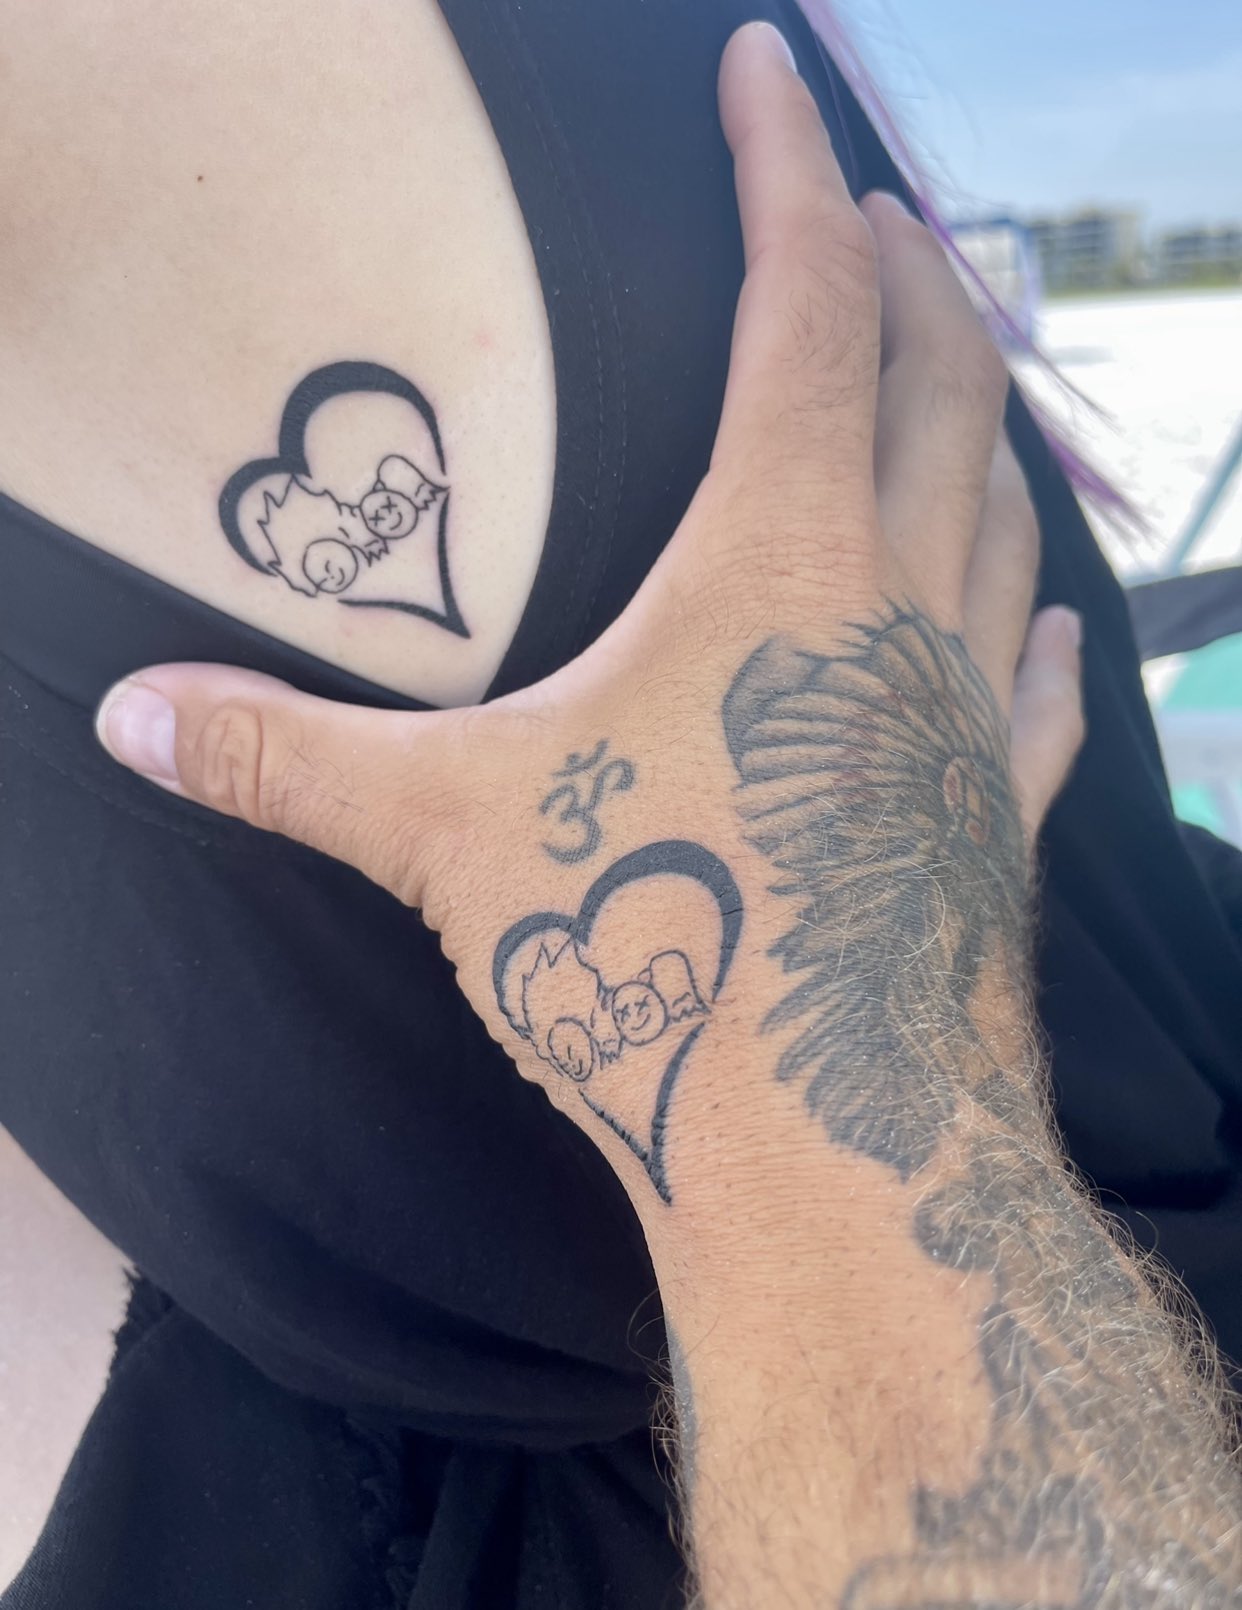 Alexa Bliss reveals her new heart-warming tattoo